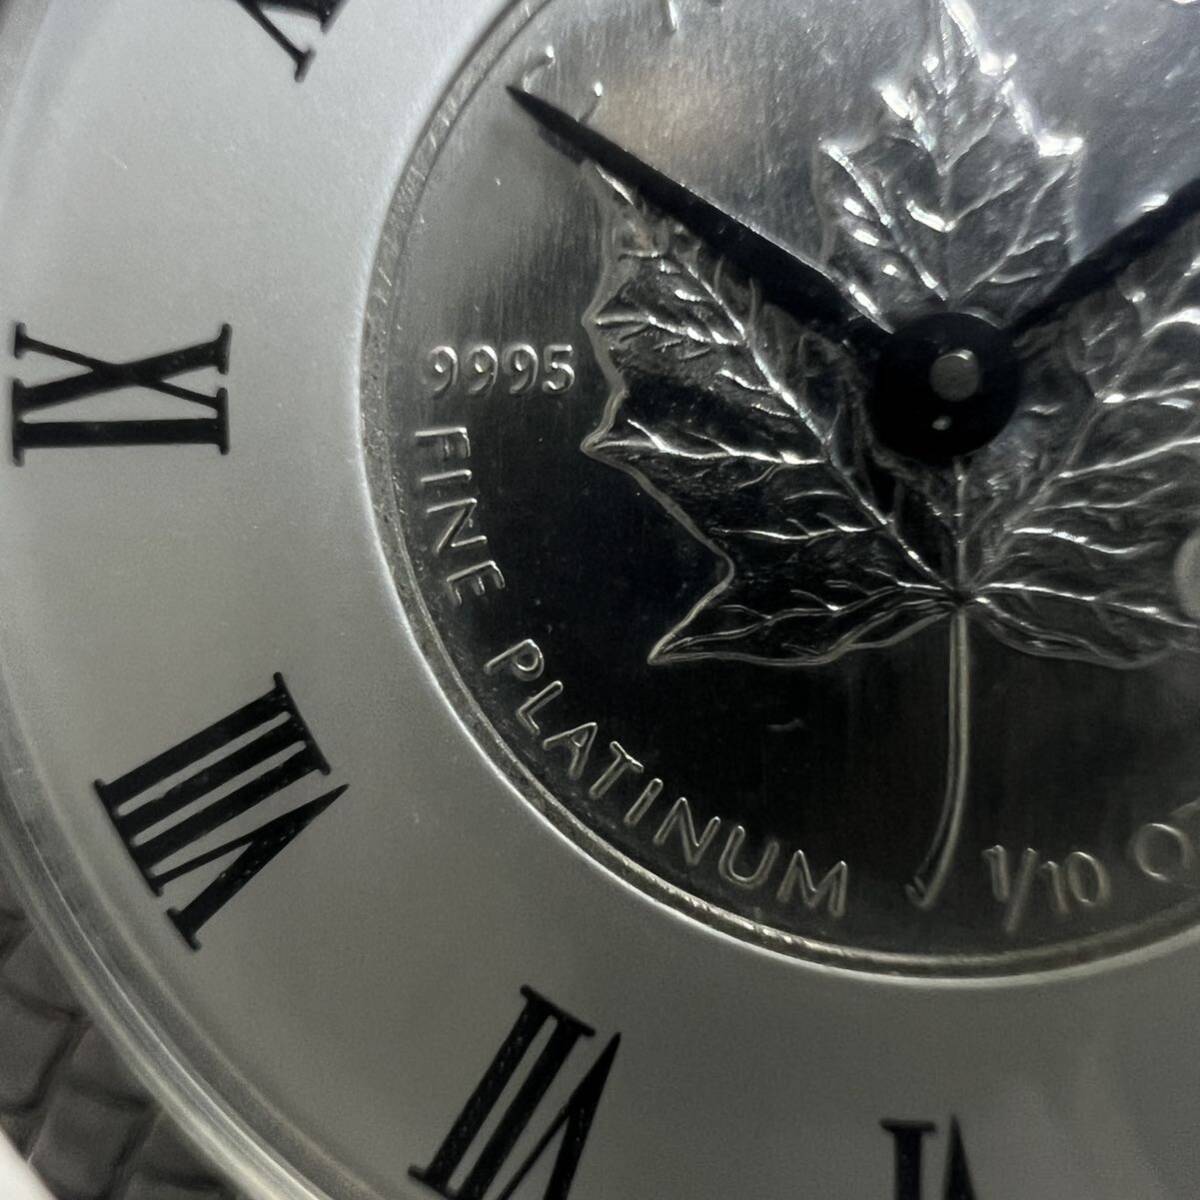 helene de michel ヘレンミッシェル クオーツ 腕時計 カナダ メイプルリーフコイン FINE PLATINUM 9995 1/10 OZ プラチナの画像4